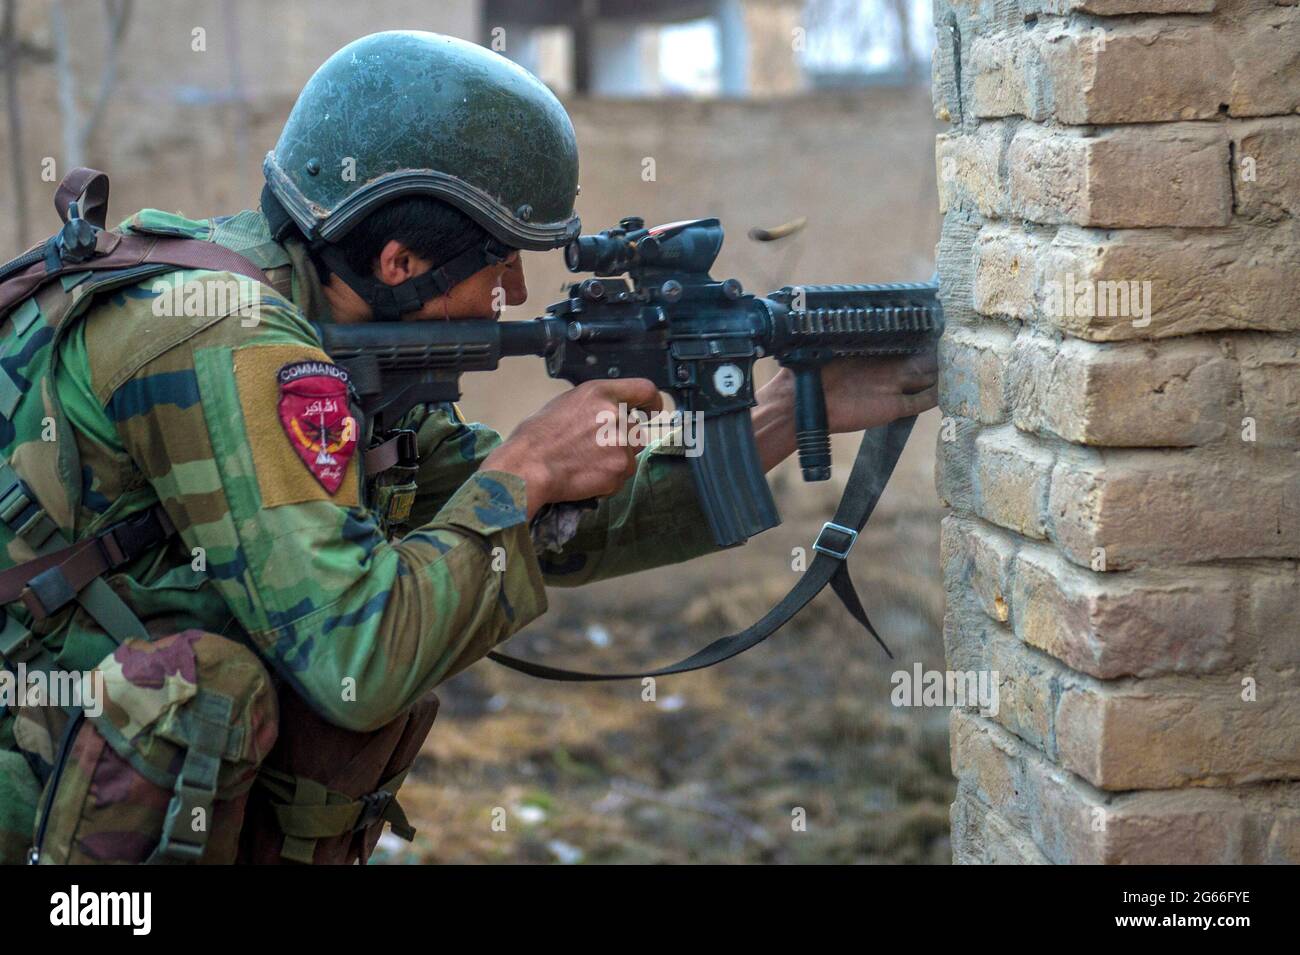 SUJANI, AFGHANISTAN - 20. Jan 2018 - ein 10. Spezialeinsatzkommando der afghanischen Nationalarmee Kandak gibt während der Offensivoperationen gegen t Stockfoto